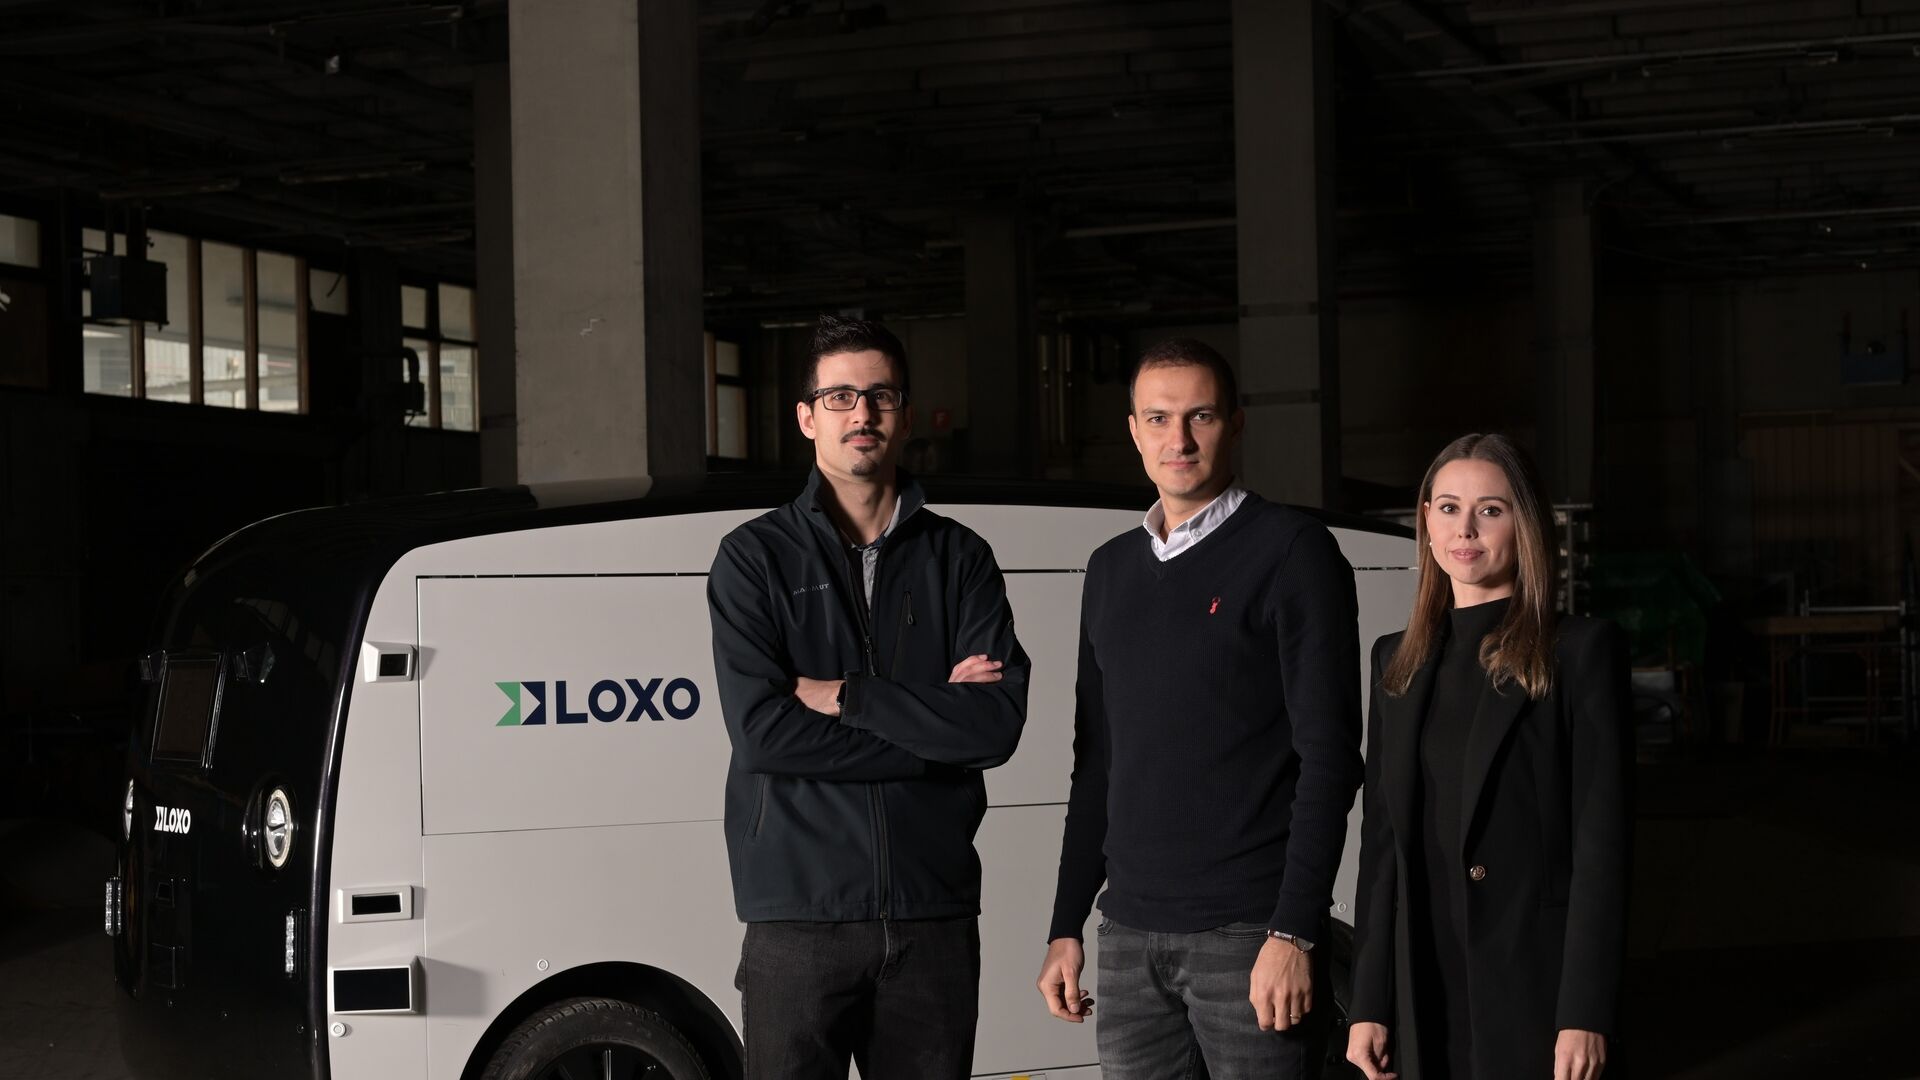 LOXO : Amin Amini, Lara Amini-Rentsch et Claudio Panizza, fondateurs de la start-up bernoise LOXO, ont construit Alpha entièrement en Suisse, un van autonome pour les livraisons à court terme